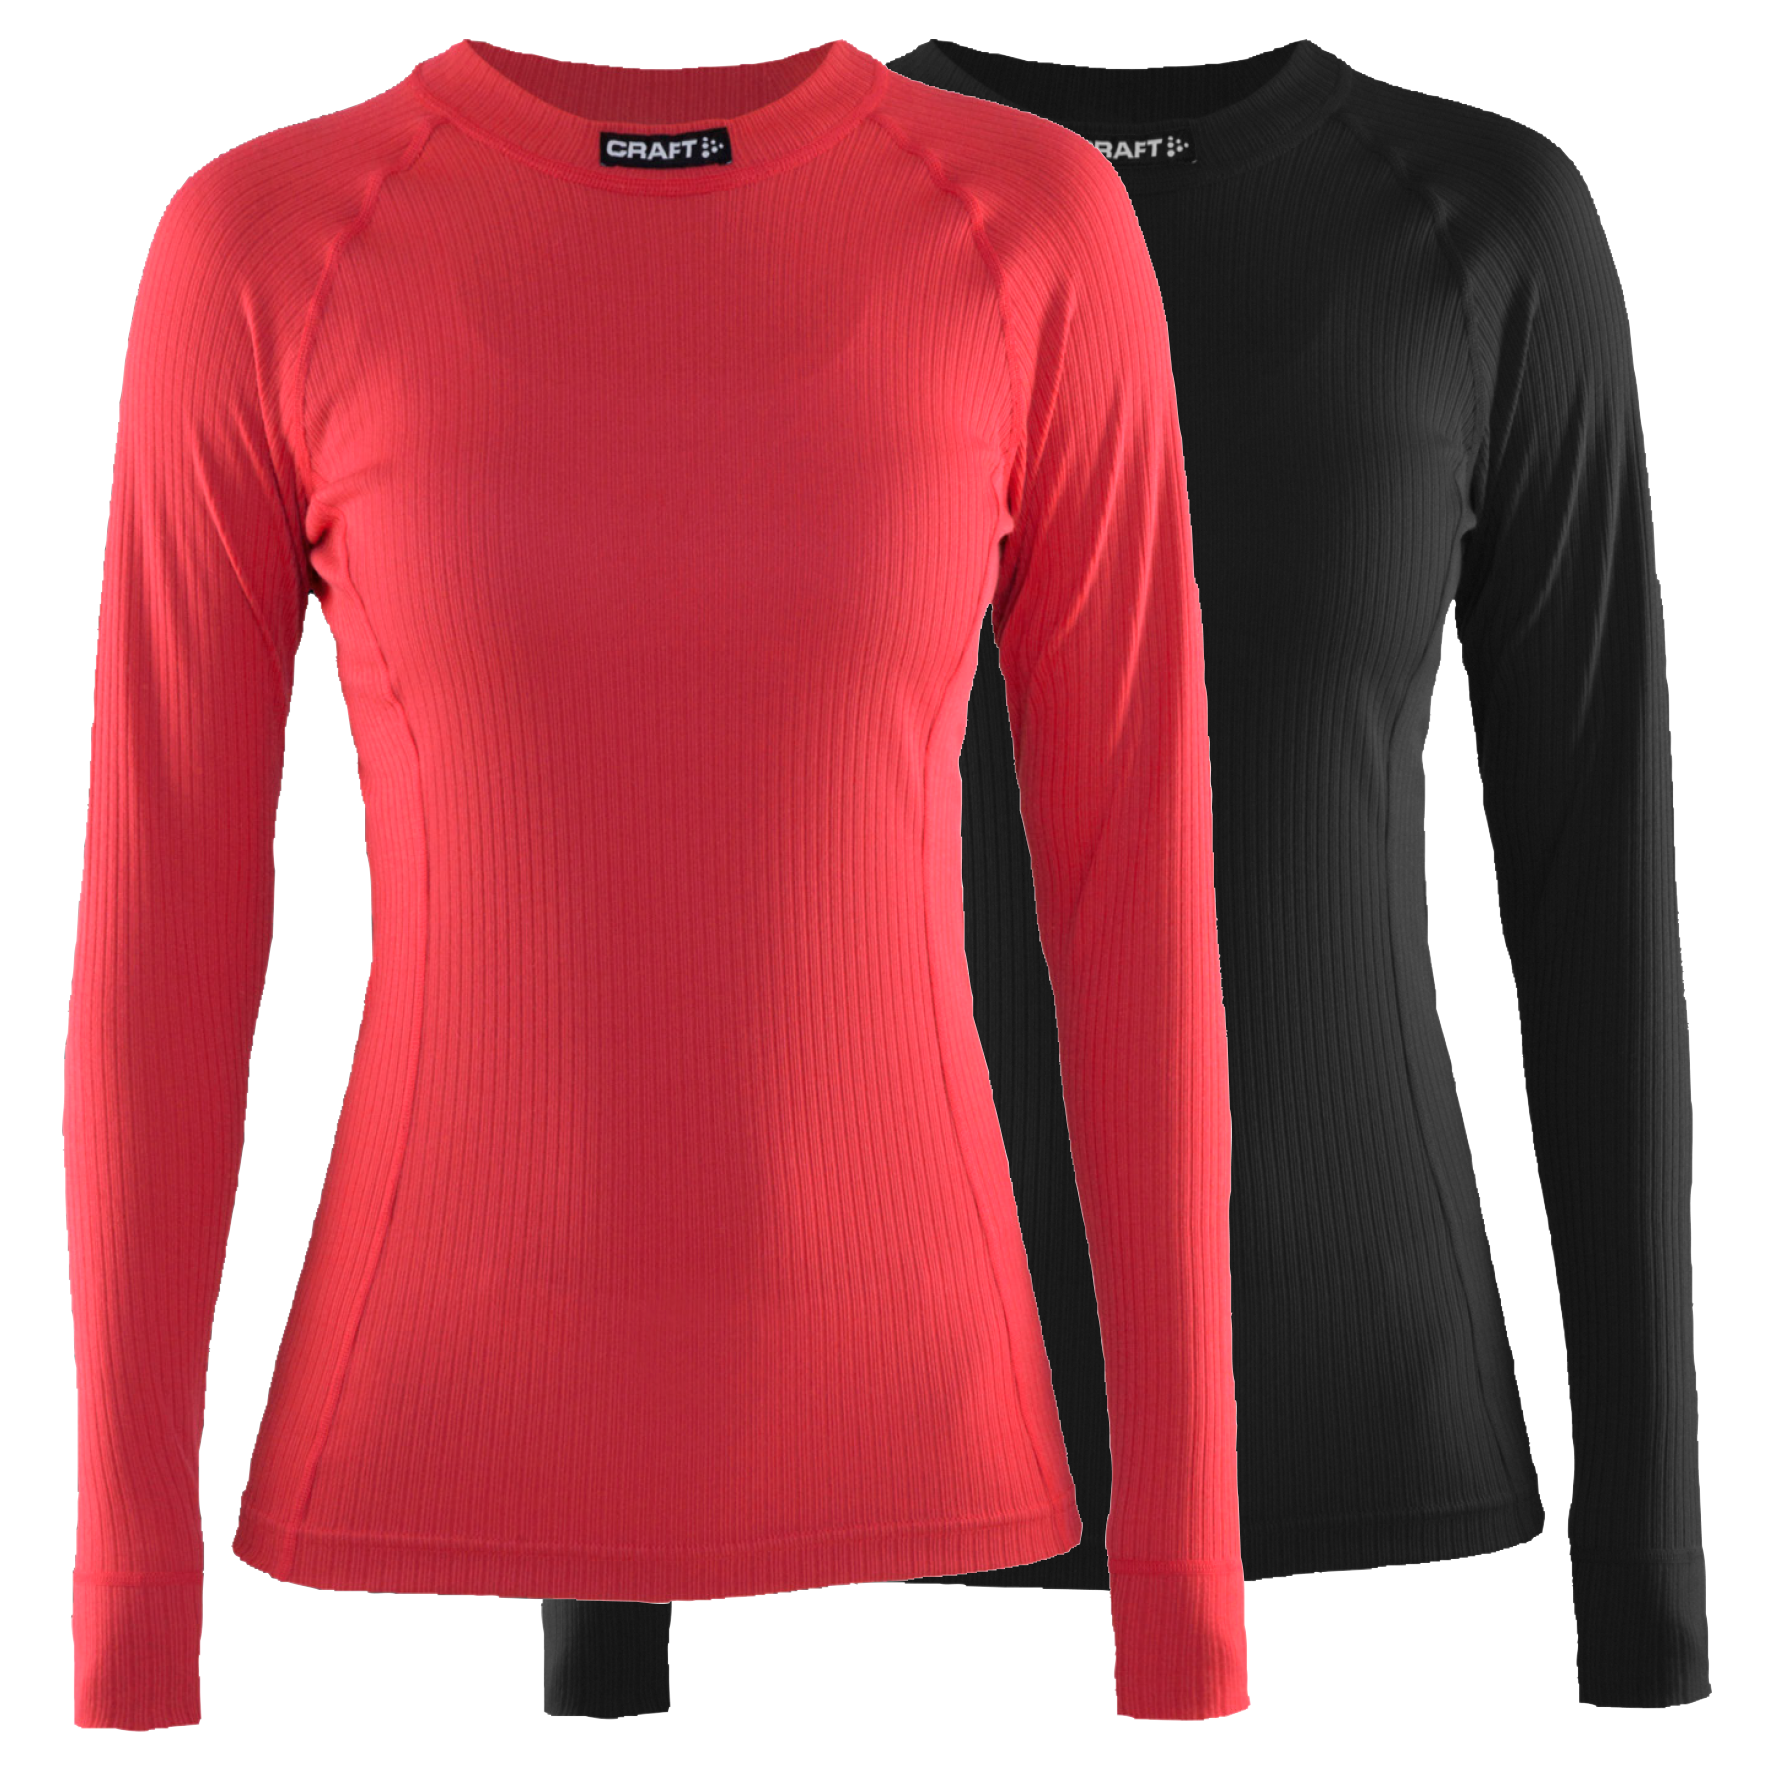 Vergelijkbaar Aubergine naam Craft active dames ondershirt met lange mouwen zwart en beam rood 2-pack